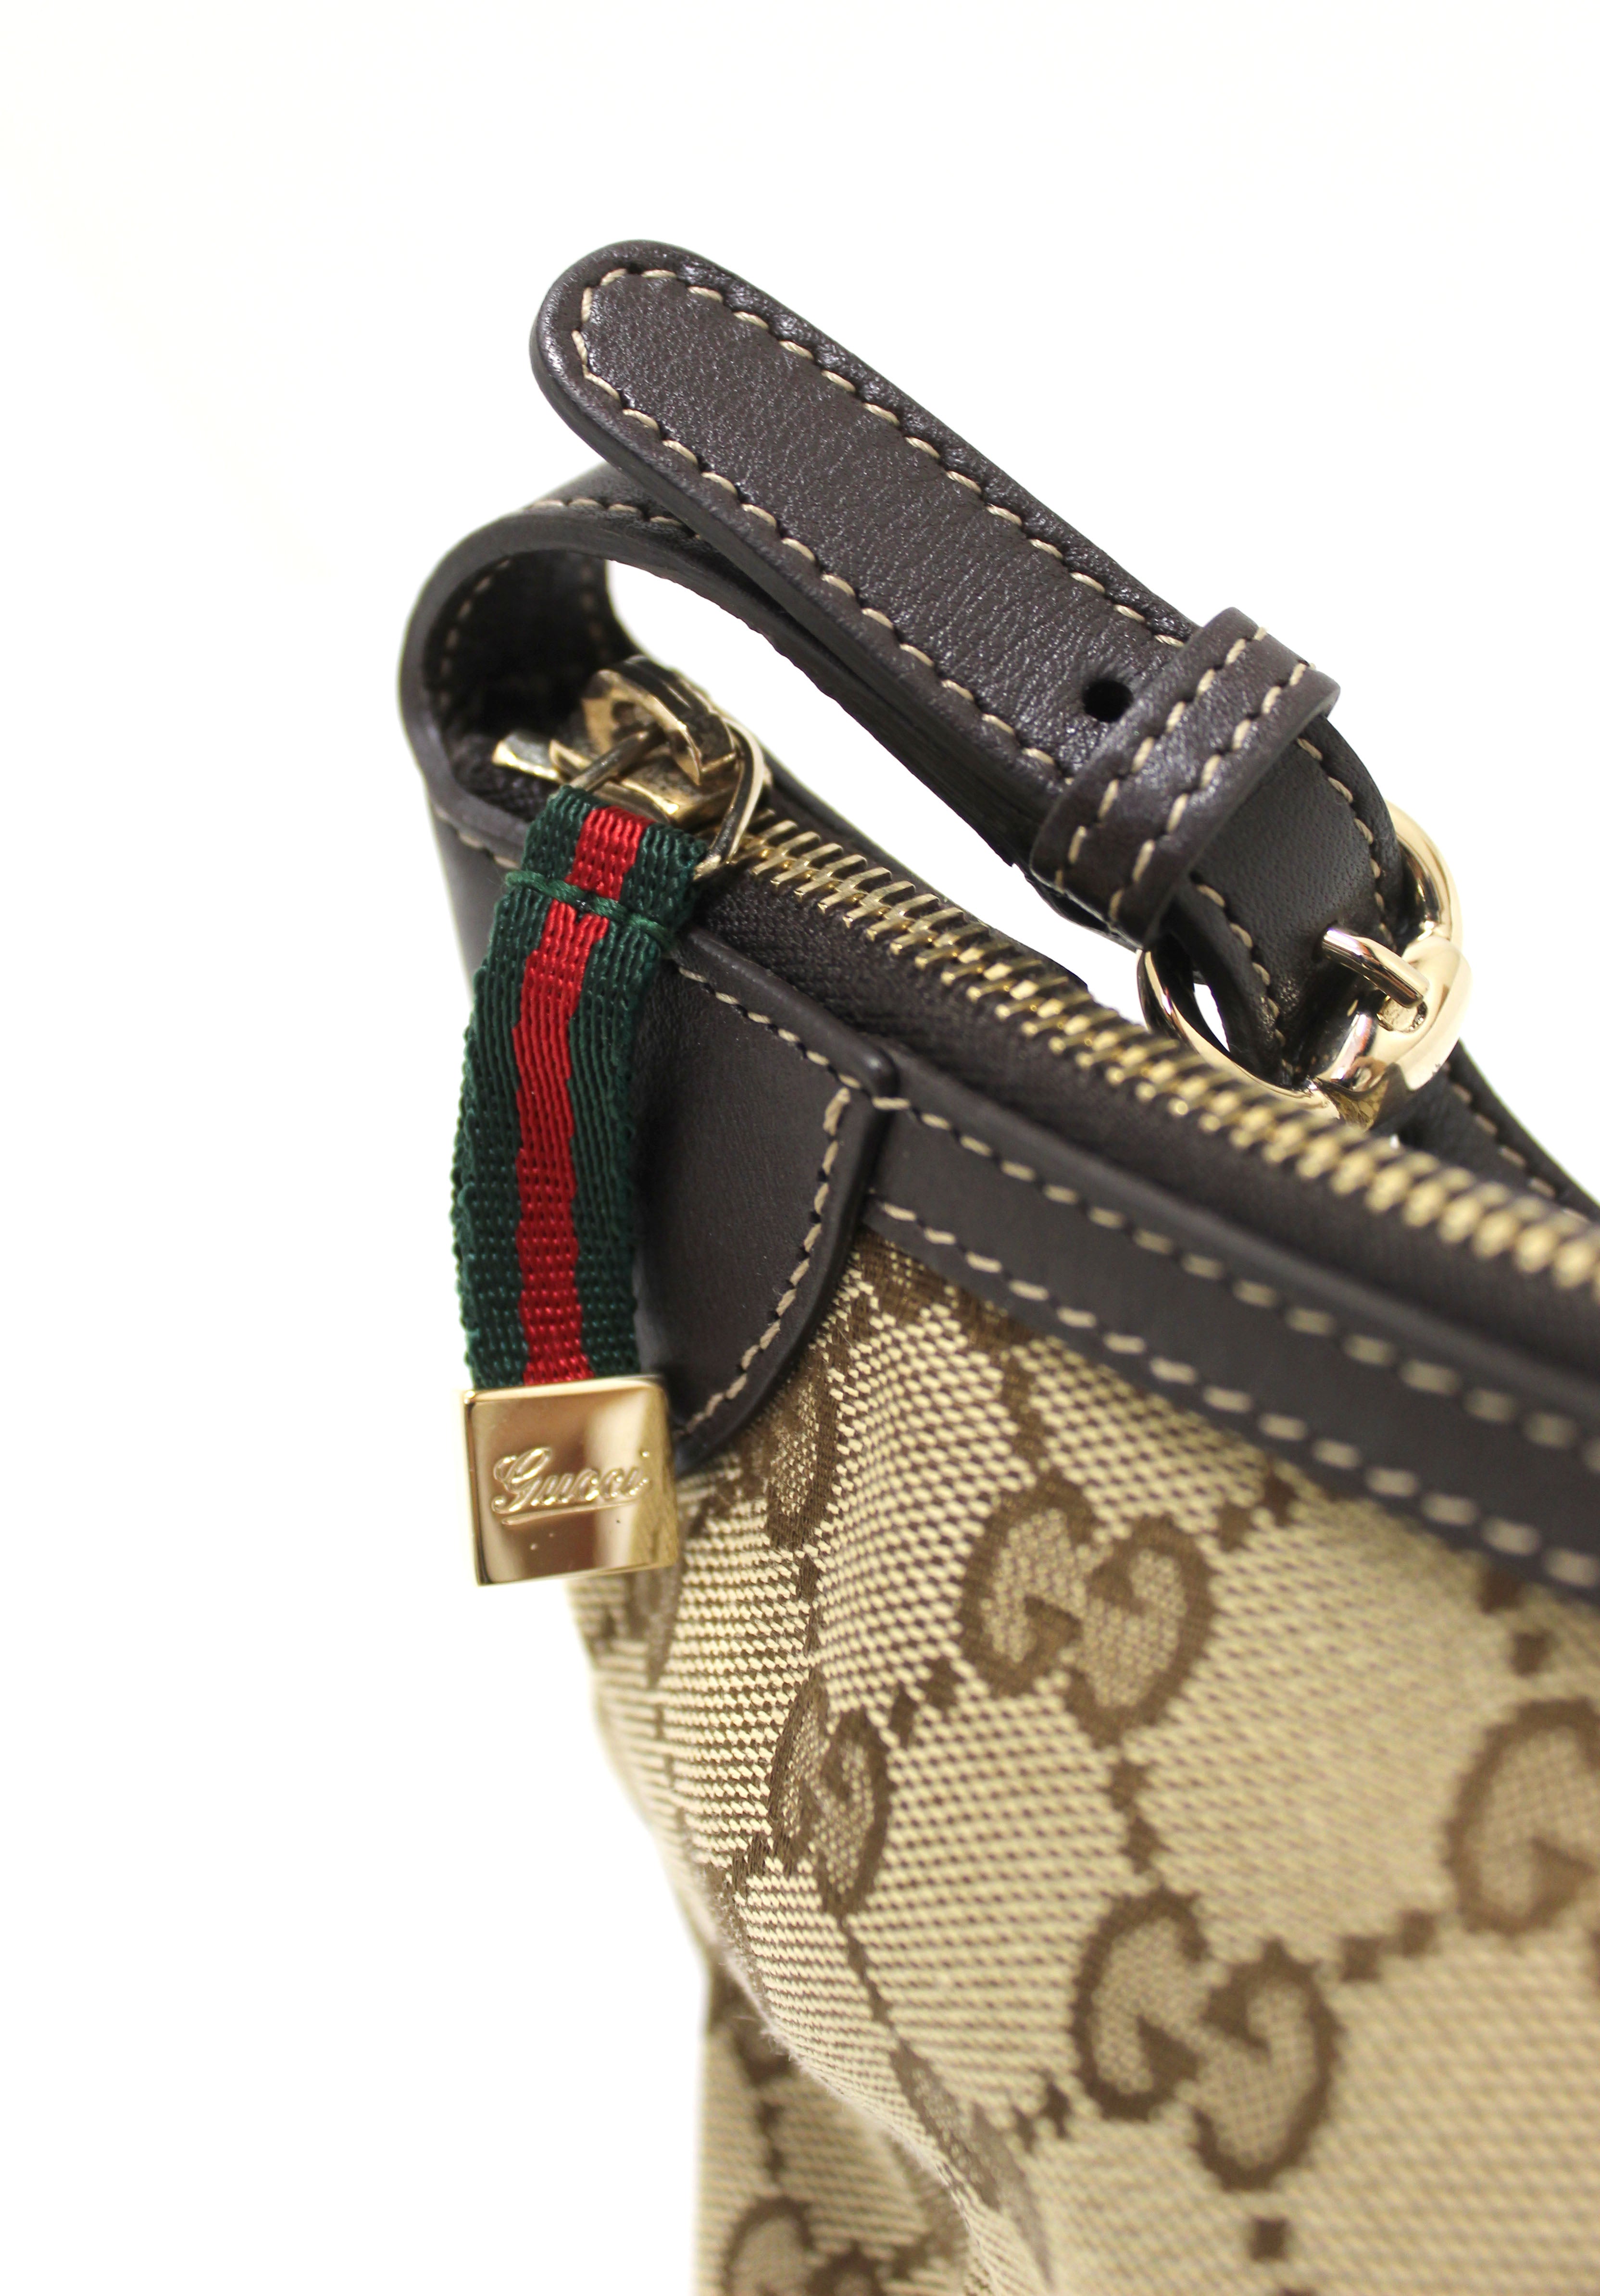 LV Pochette Accessoires vs Gucci Ophidia GG Mini Bag (Comparison + Review)  